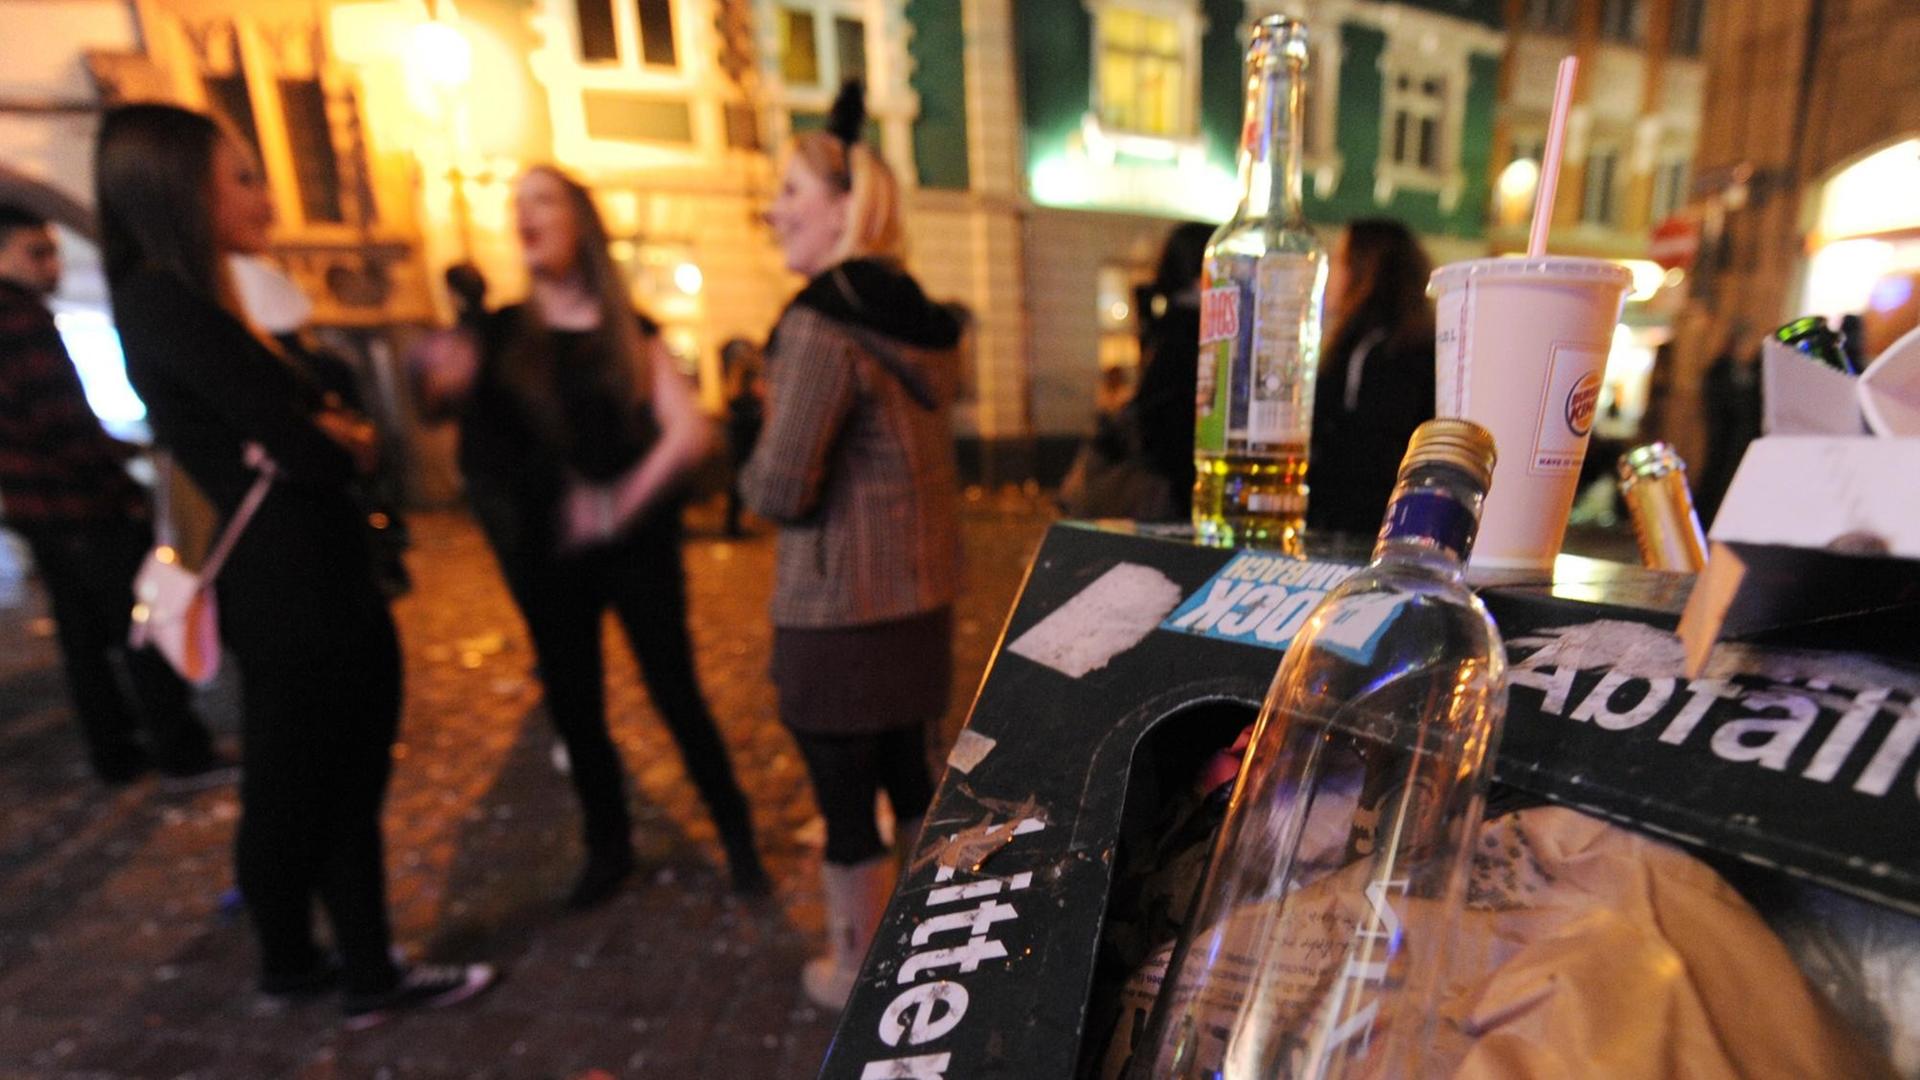 Eine Flasche liegt am Dienstag (21.02.2012) in der Freiburger Fußgängerzone in einem Abfalleimer. Im Hintergrund stehen verkleidete Narren.